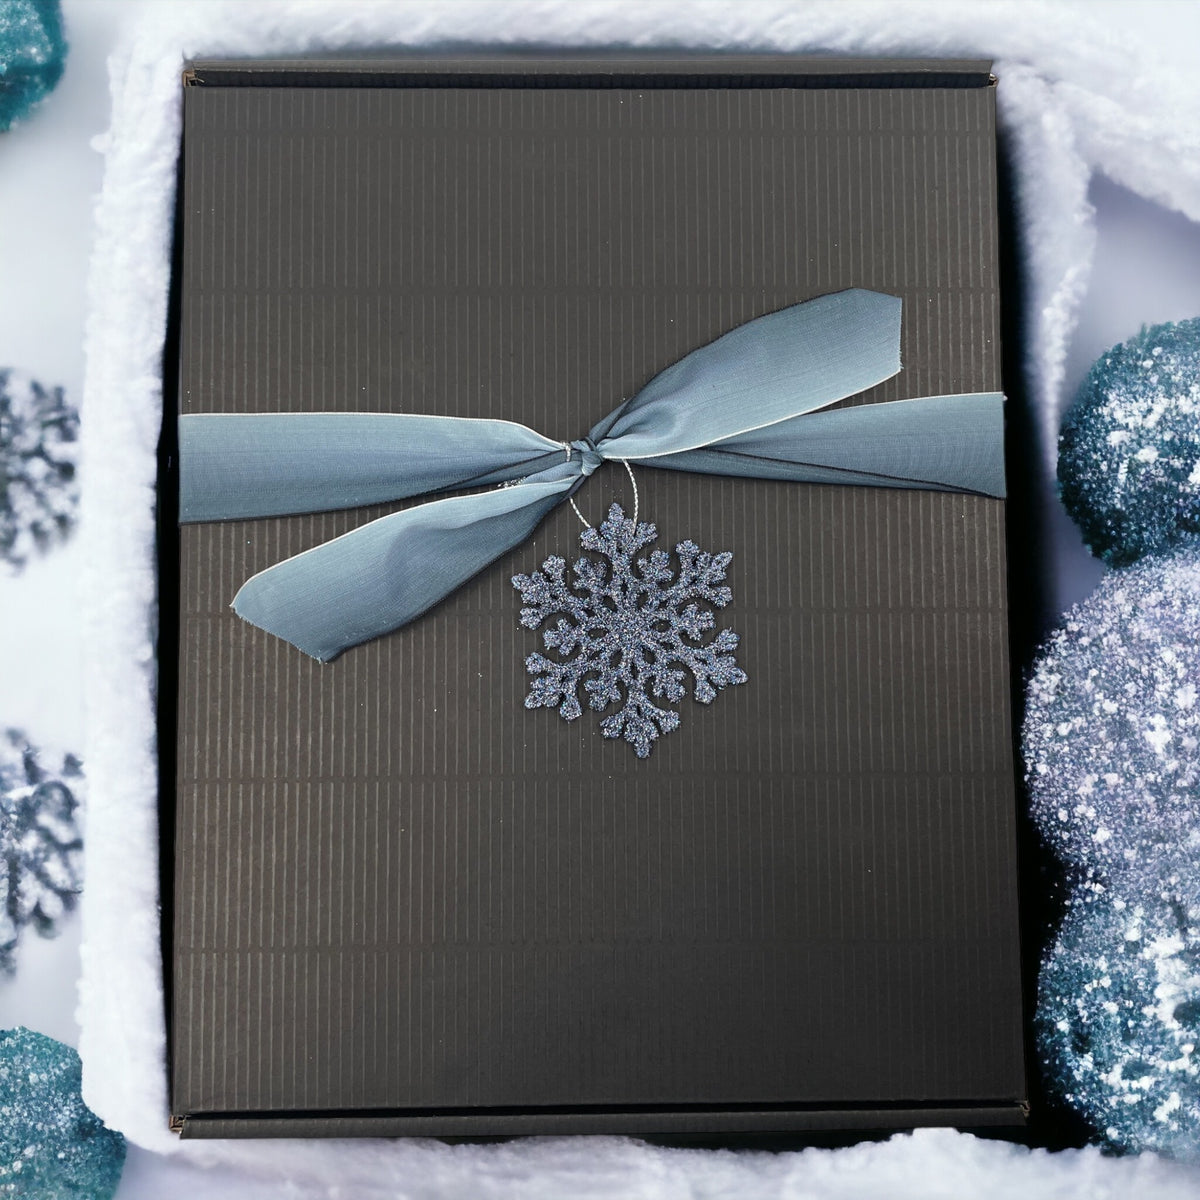 Indulgent Italian Chocolate Fiesta - Perfect Corporate Christmas Treat